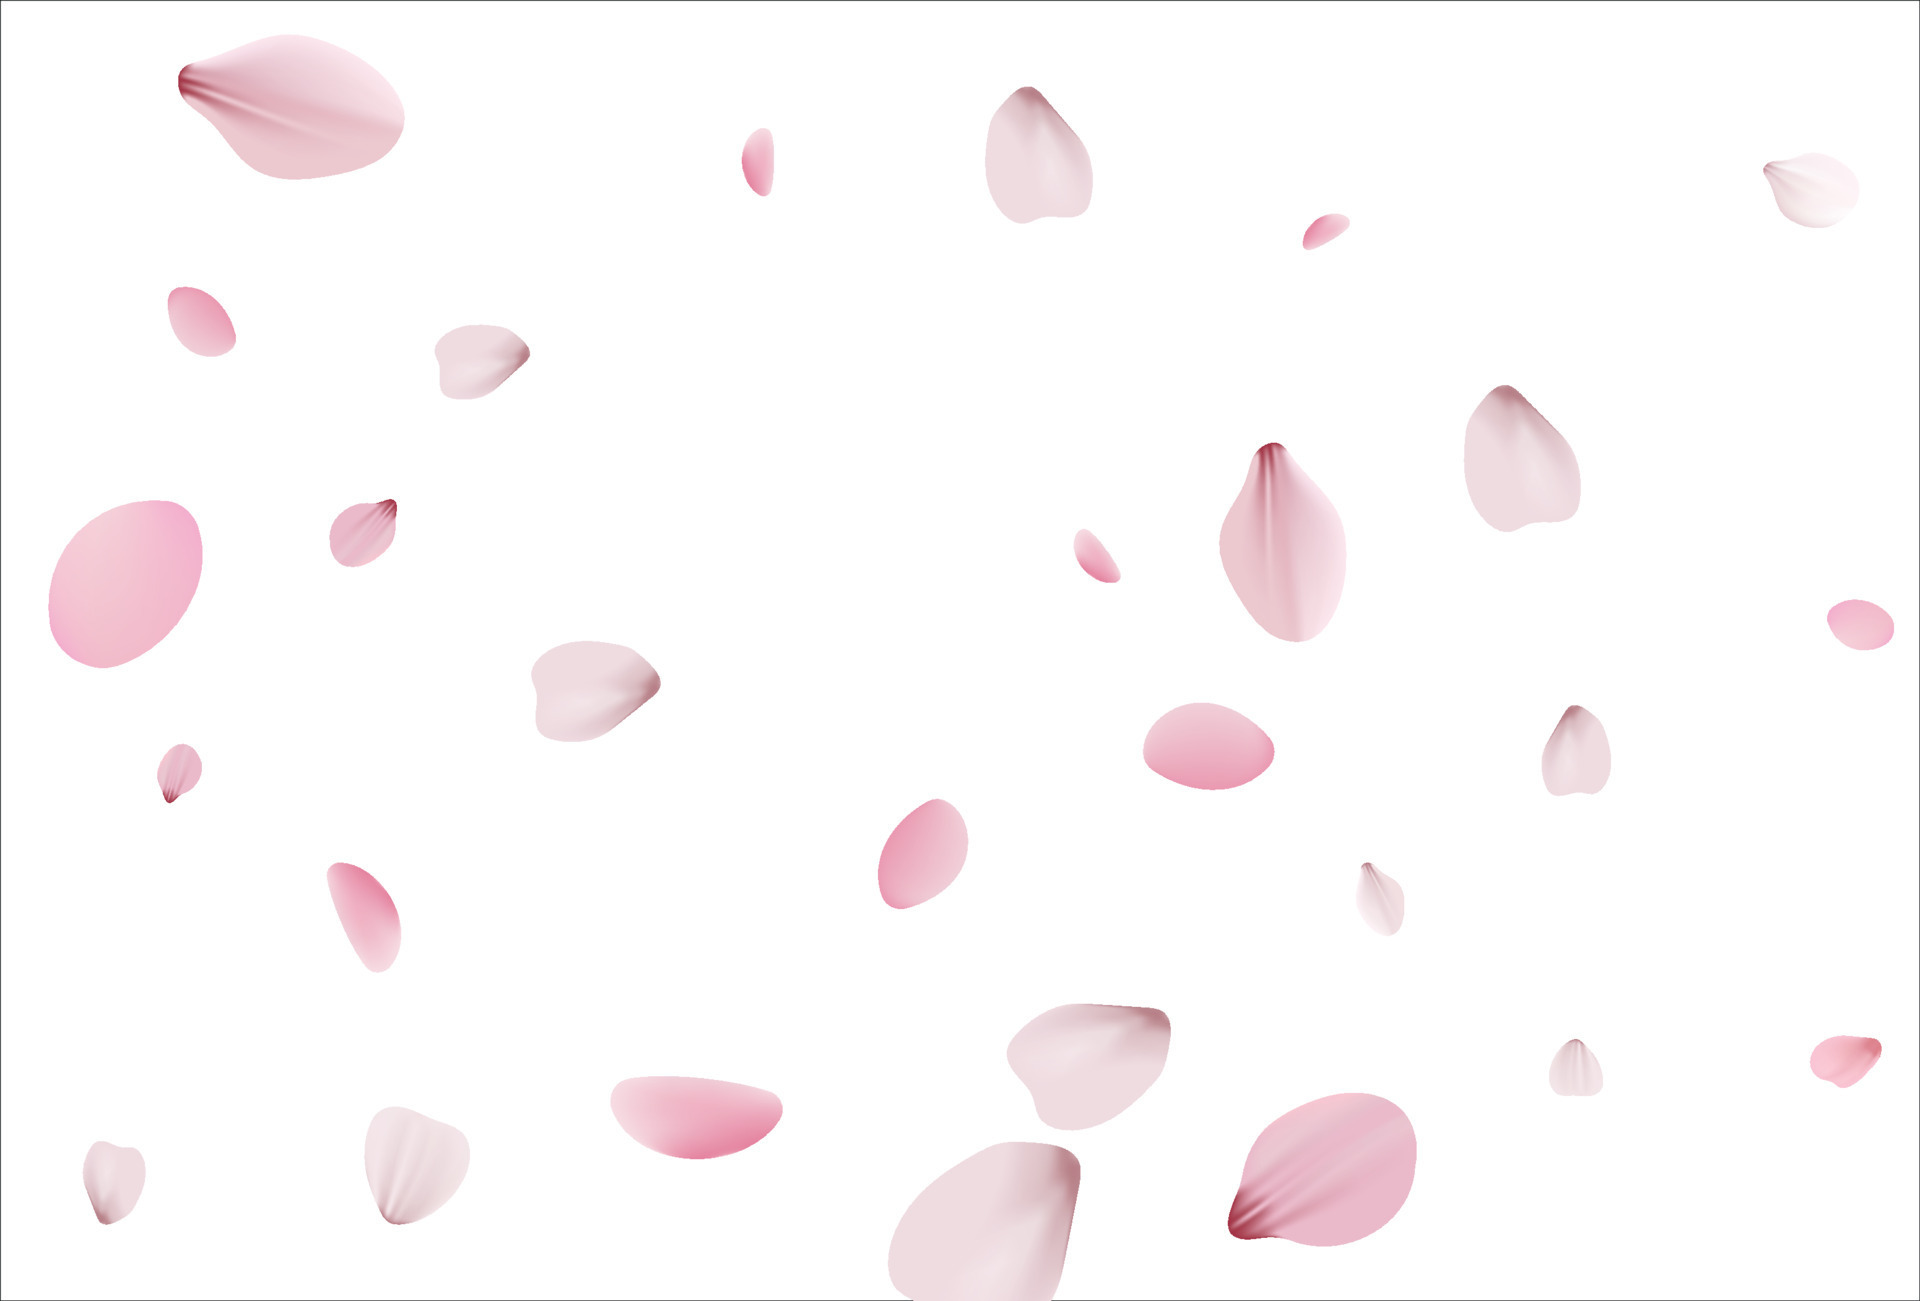 Sakura background, cherry vector background 7197123 Vector Art at Vecteezy